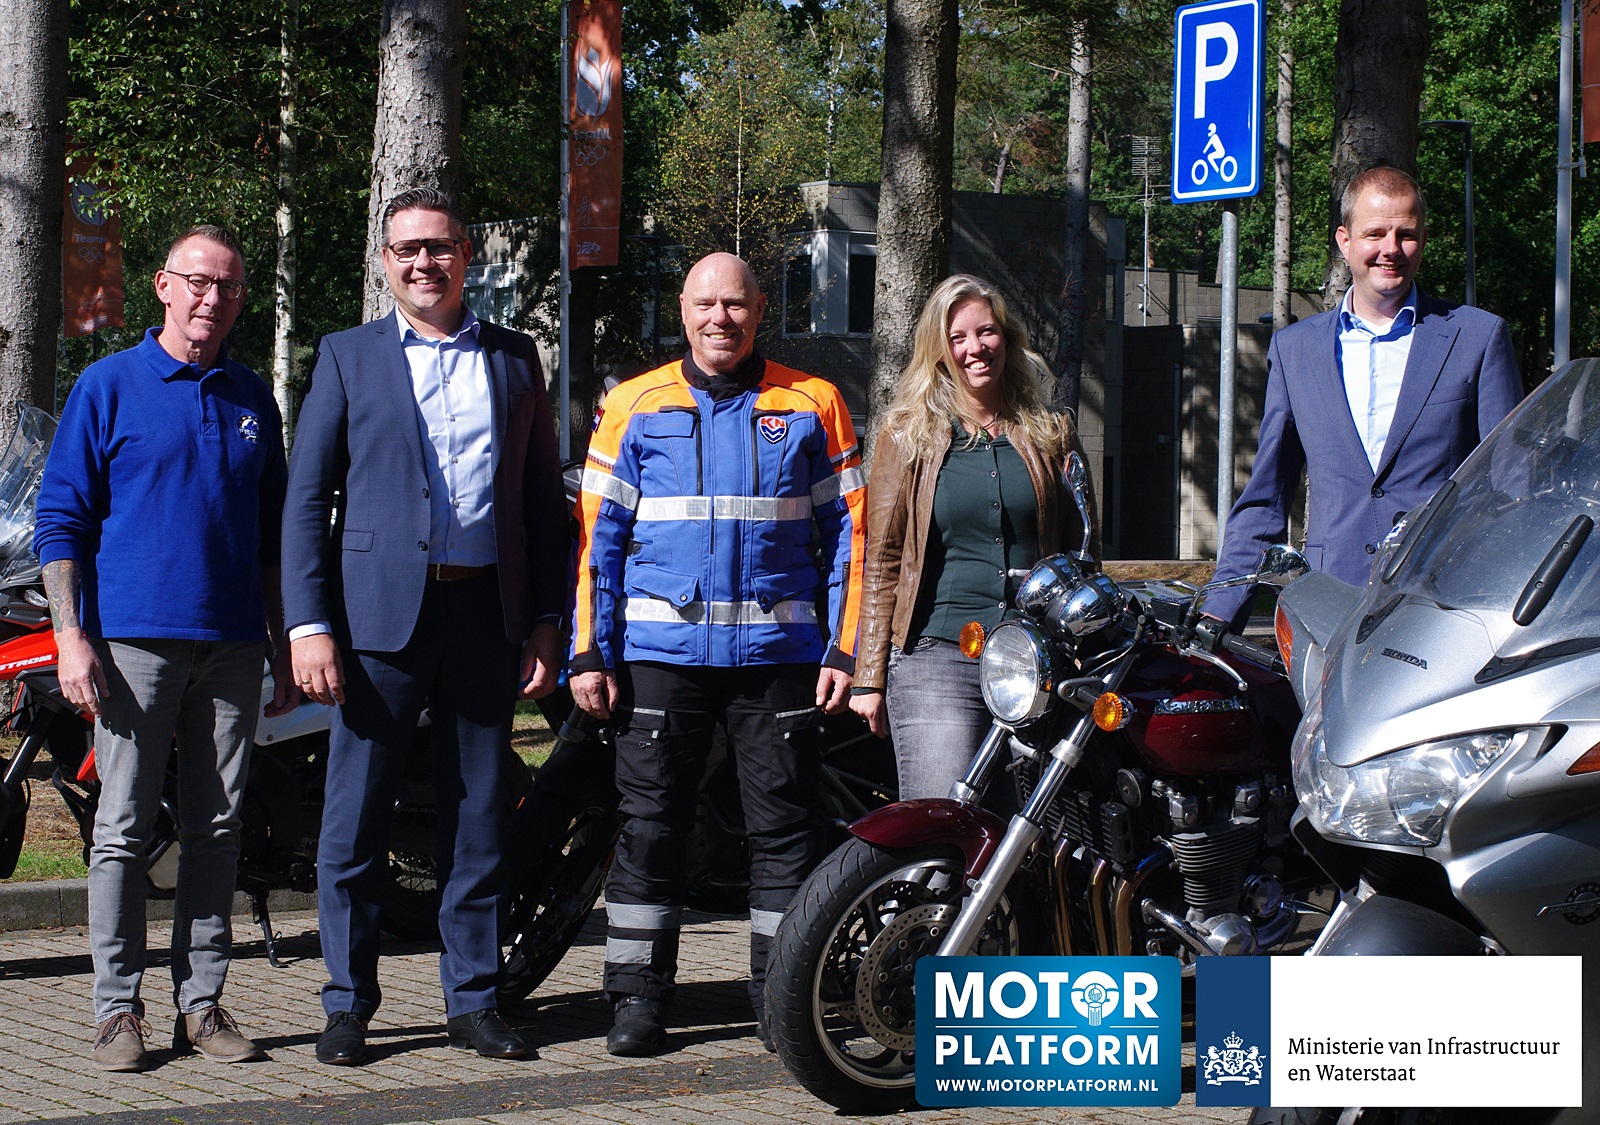 (c) Motorplatform.nl